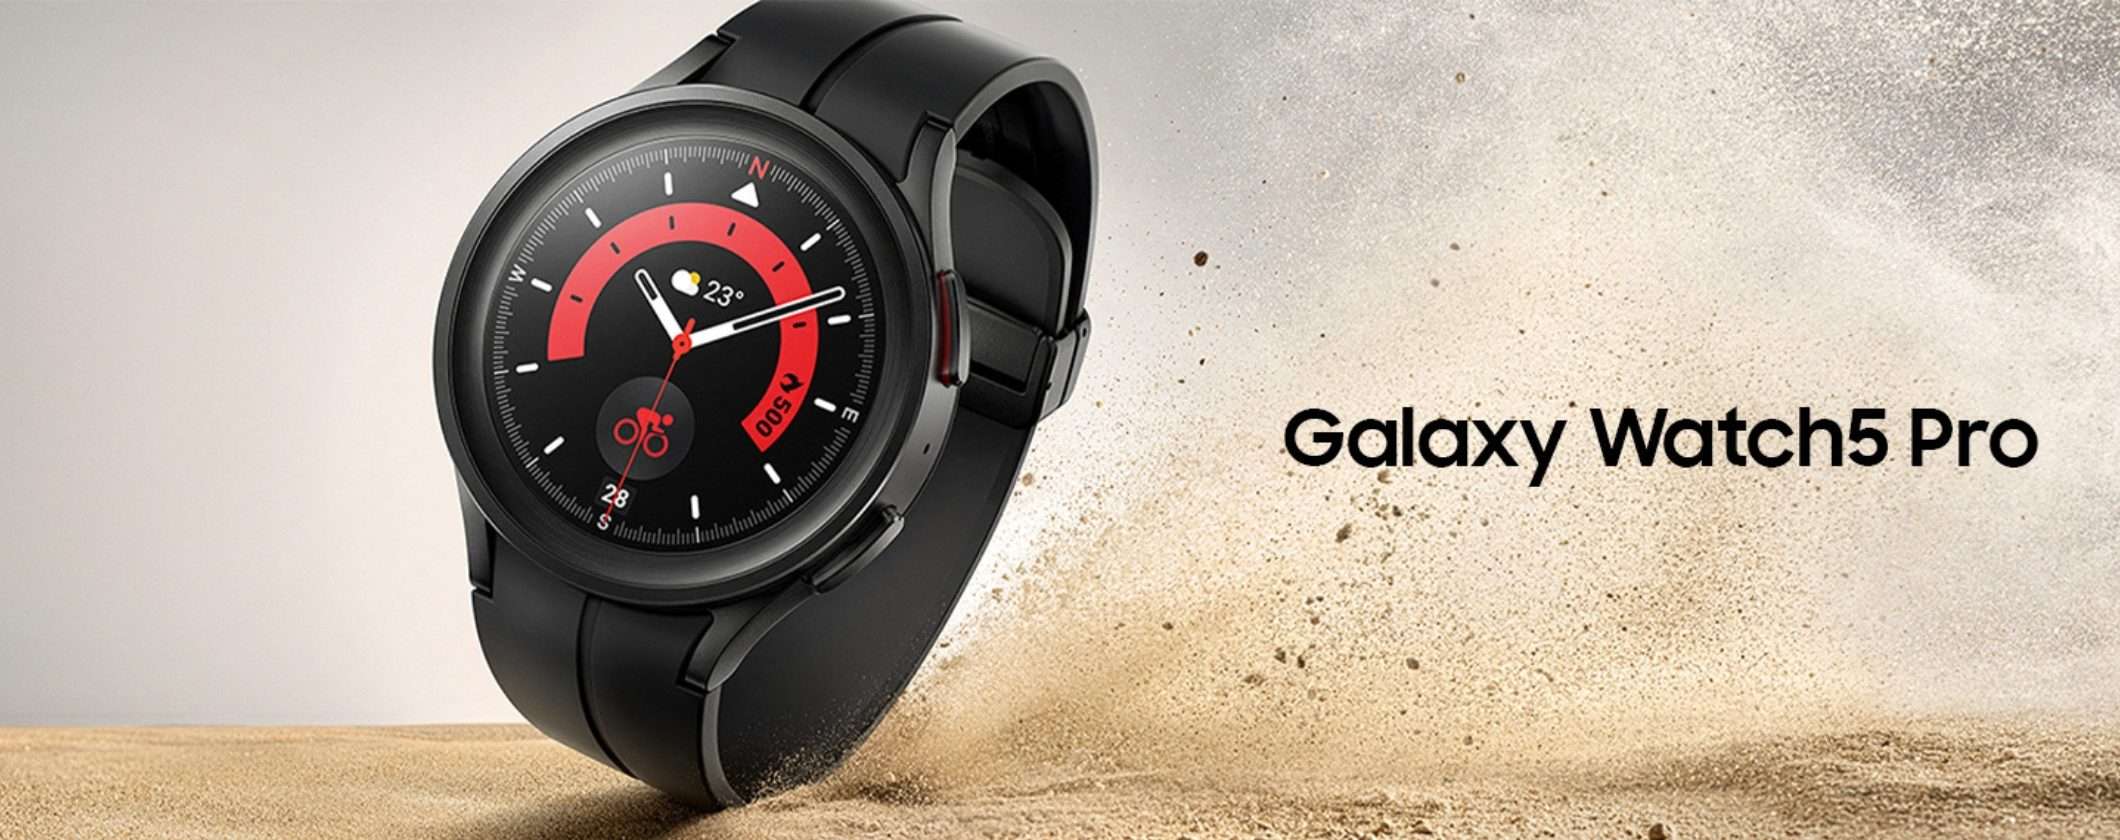 Vivi le migliori avventure con Samsung Galaxy Watch5 Pro a -50%